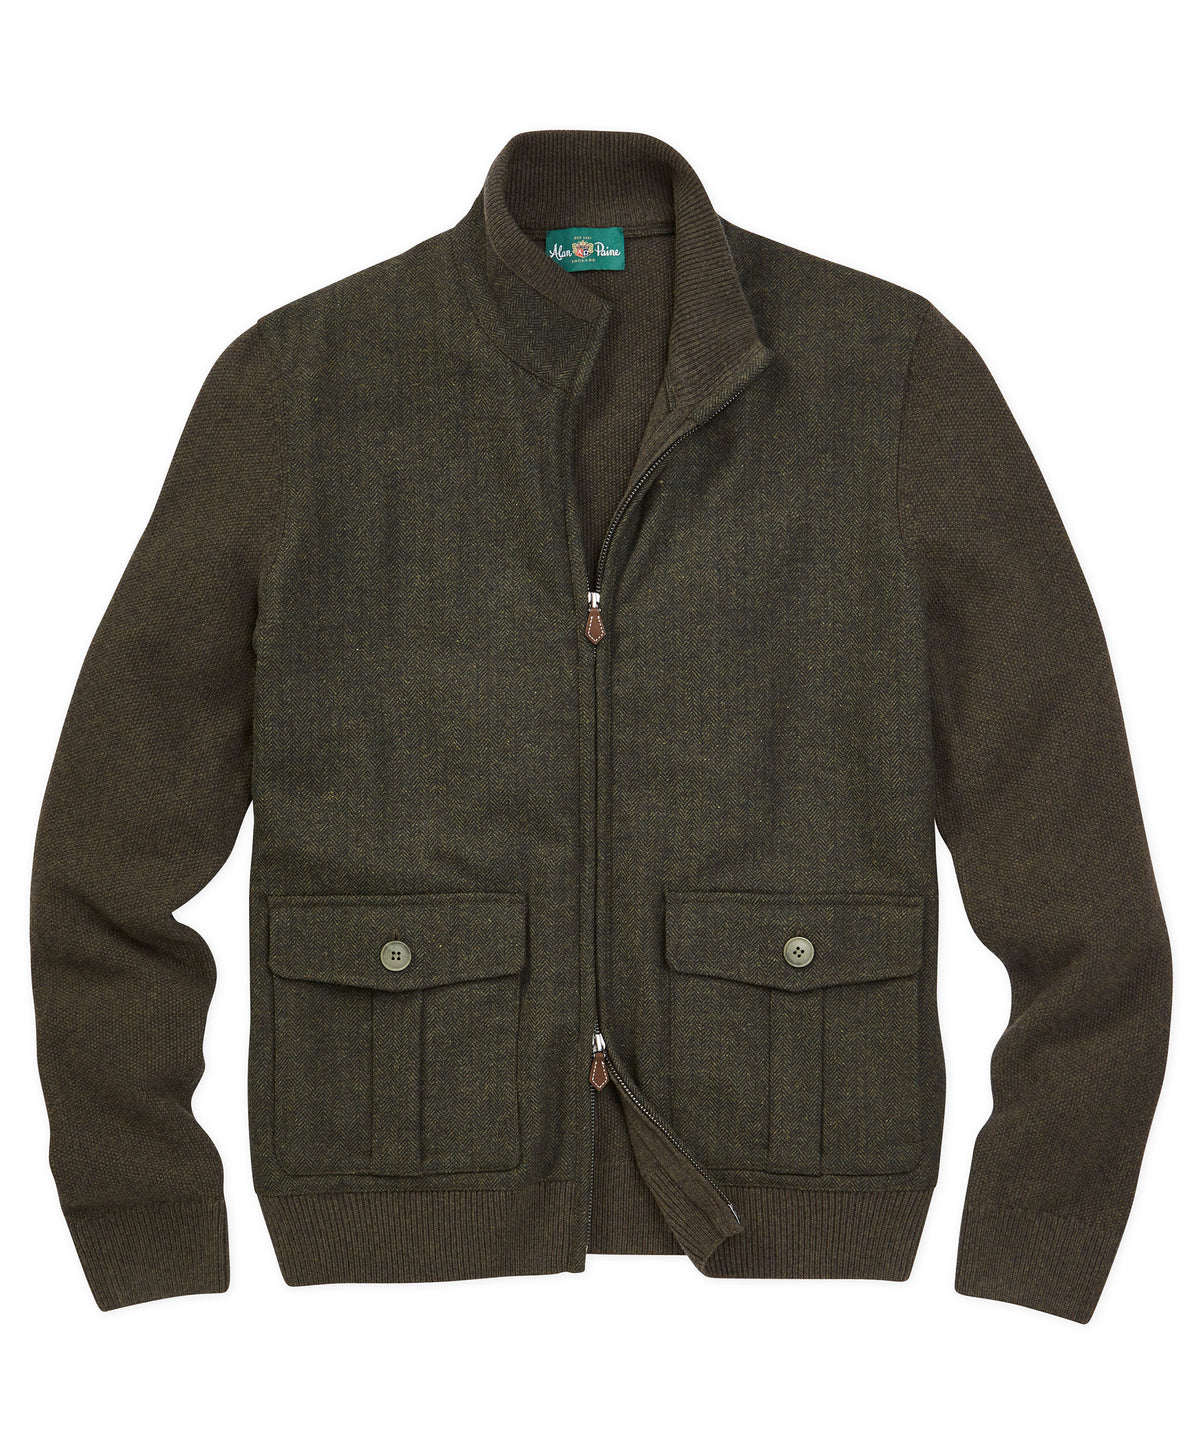 Alan Paine Thursford Tweed-Merino Hybrid Jacket